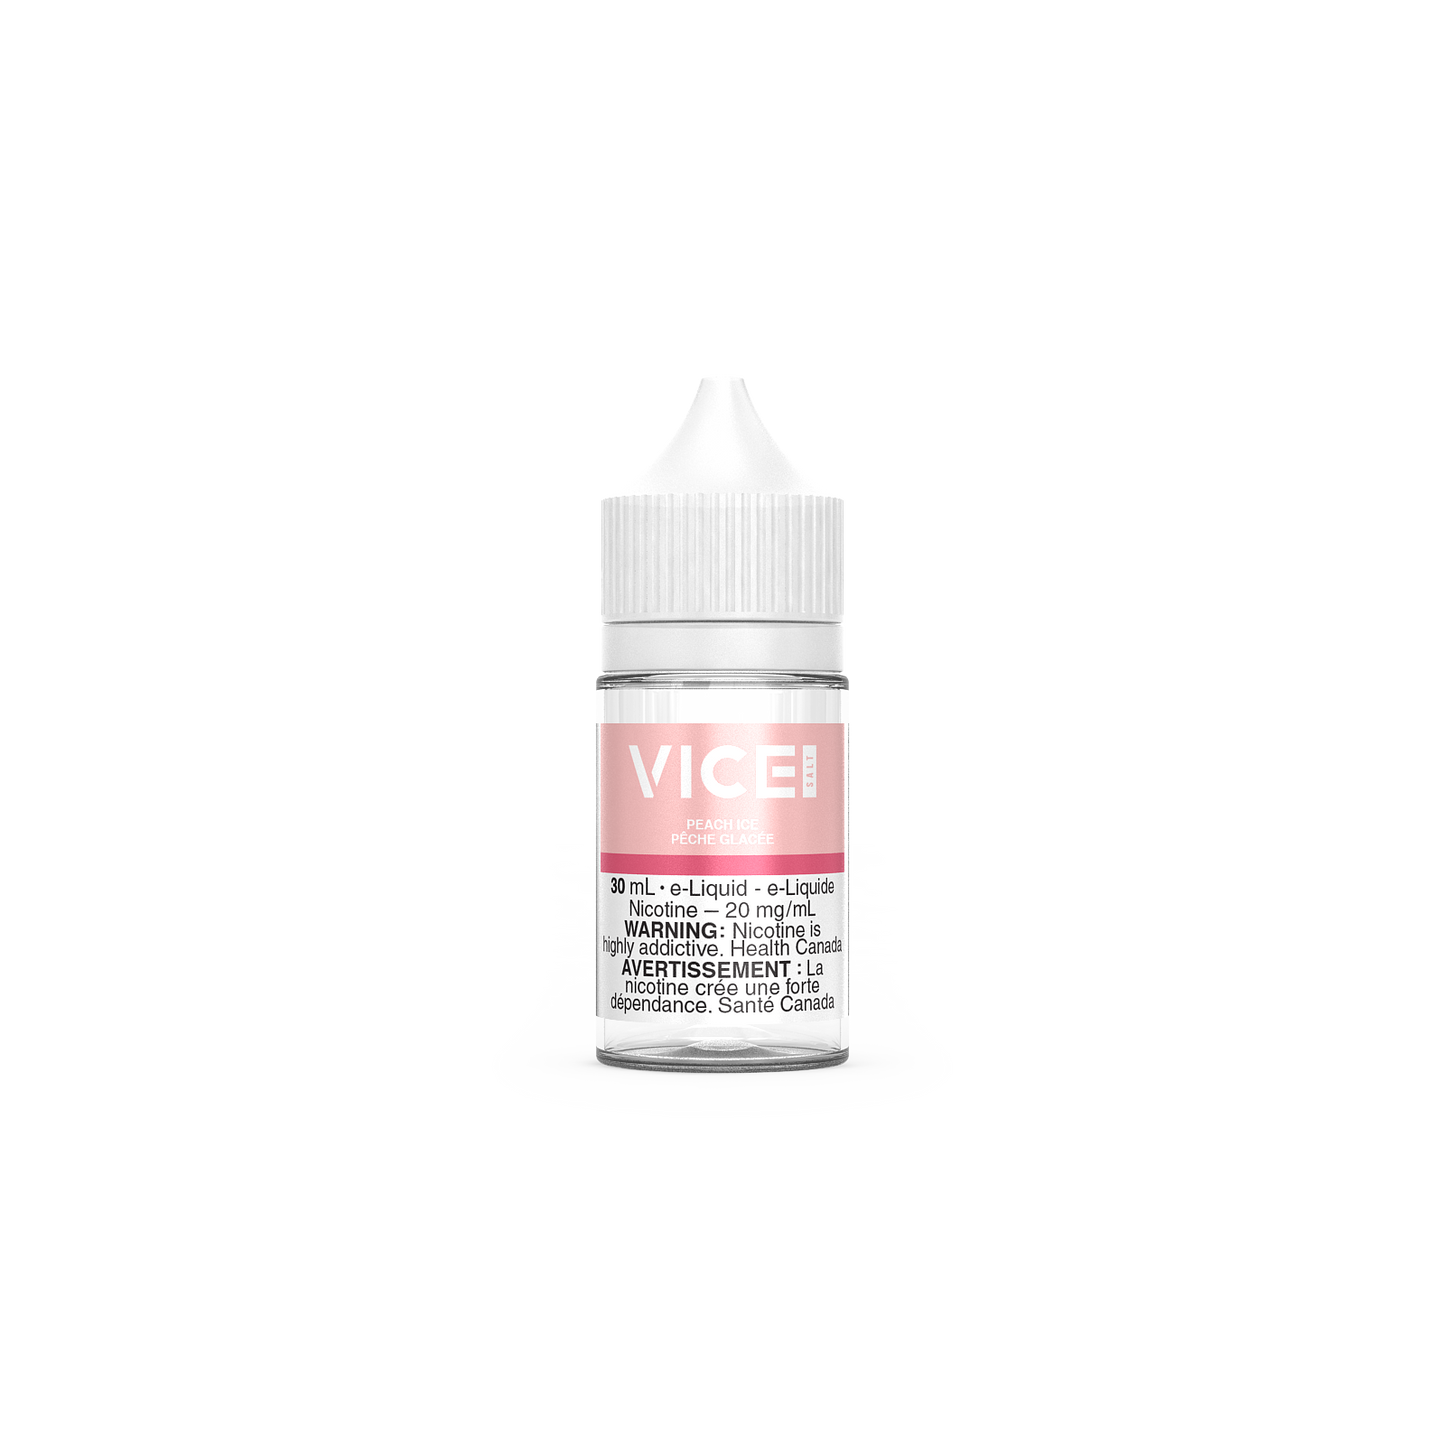 Peach Ice - Vice Salt